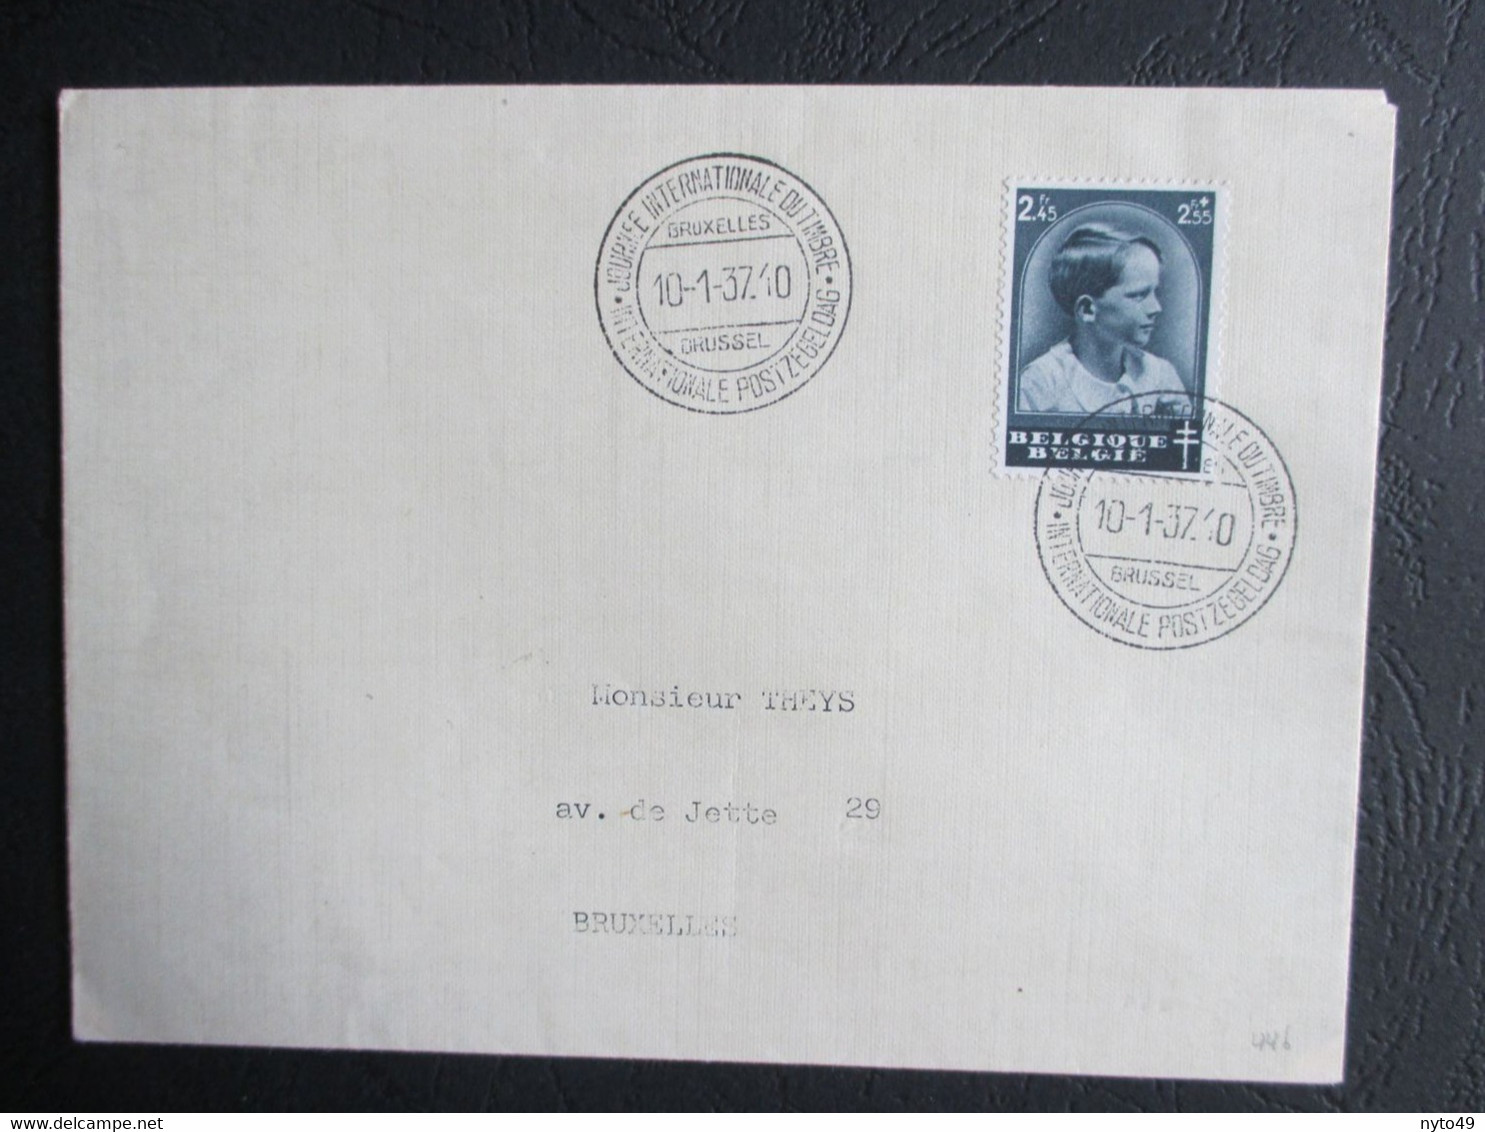 446 - Prins Boudewijn - Dag Van De Postzegel - Op Brief Met Gelegenheidsstempel - Kwot € 15 - Gebruikt